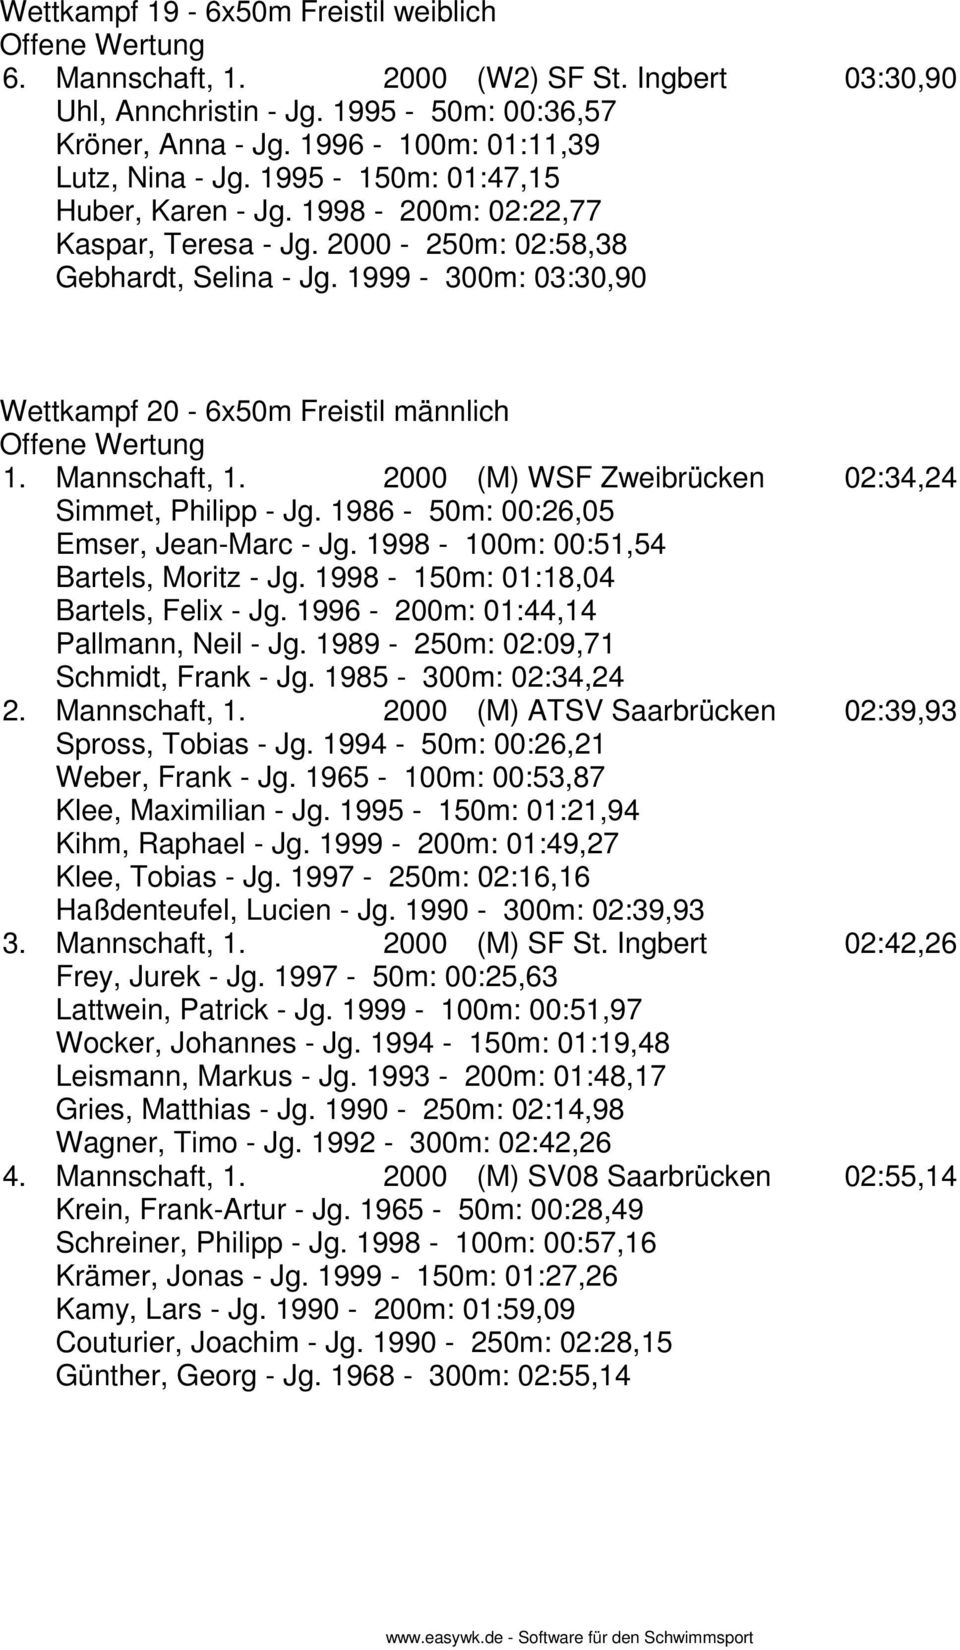 2000 (M) WSF Zweibrücken 02:34,24 Simmet, Philipp - Jg. 1986-50m: 00:26,05 Emser, Jean-Marc - Jg. 1998-100m: 00:51,54 Bartels, Moritz - Jg. 1998-150m: 01:18,04 Bartels, Felix - Jg.